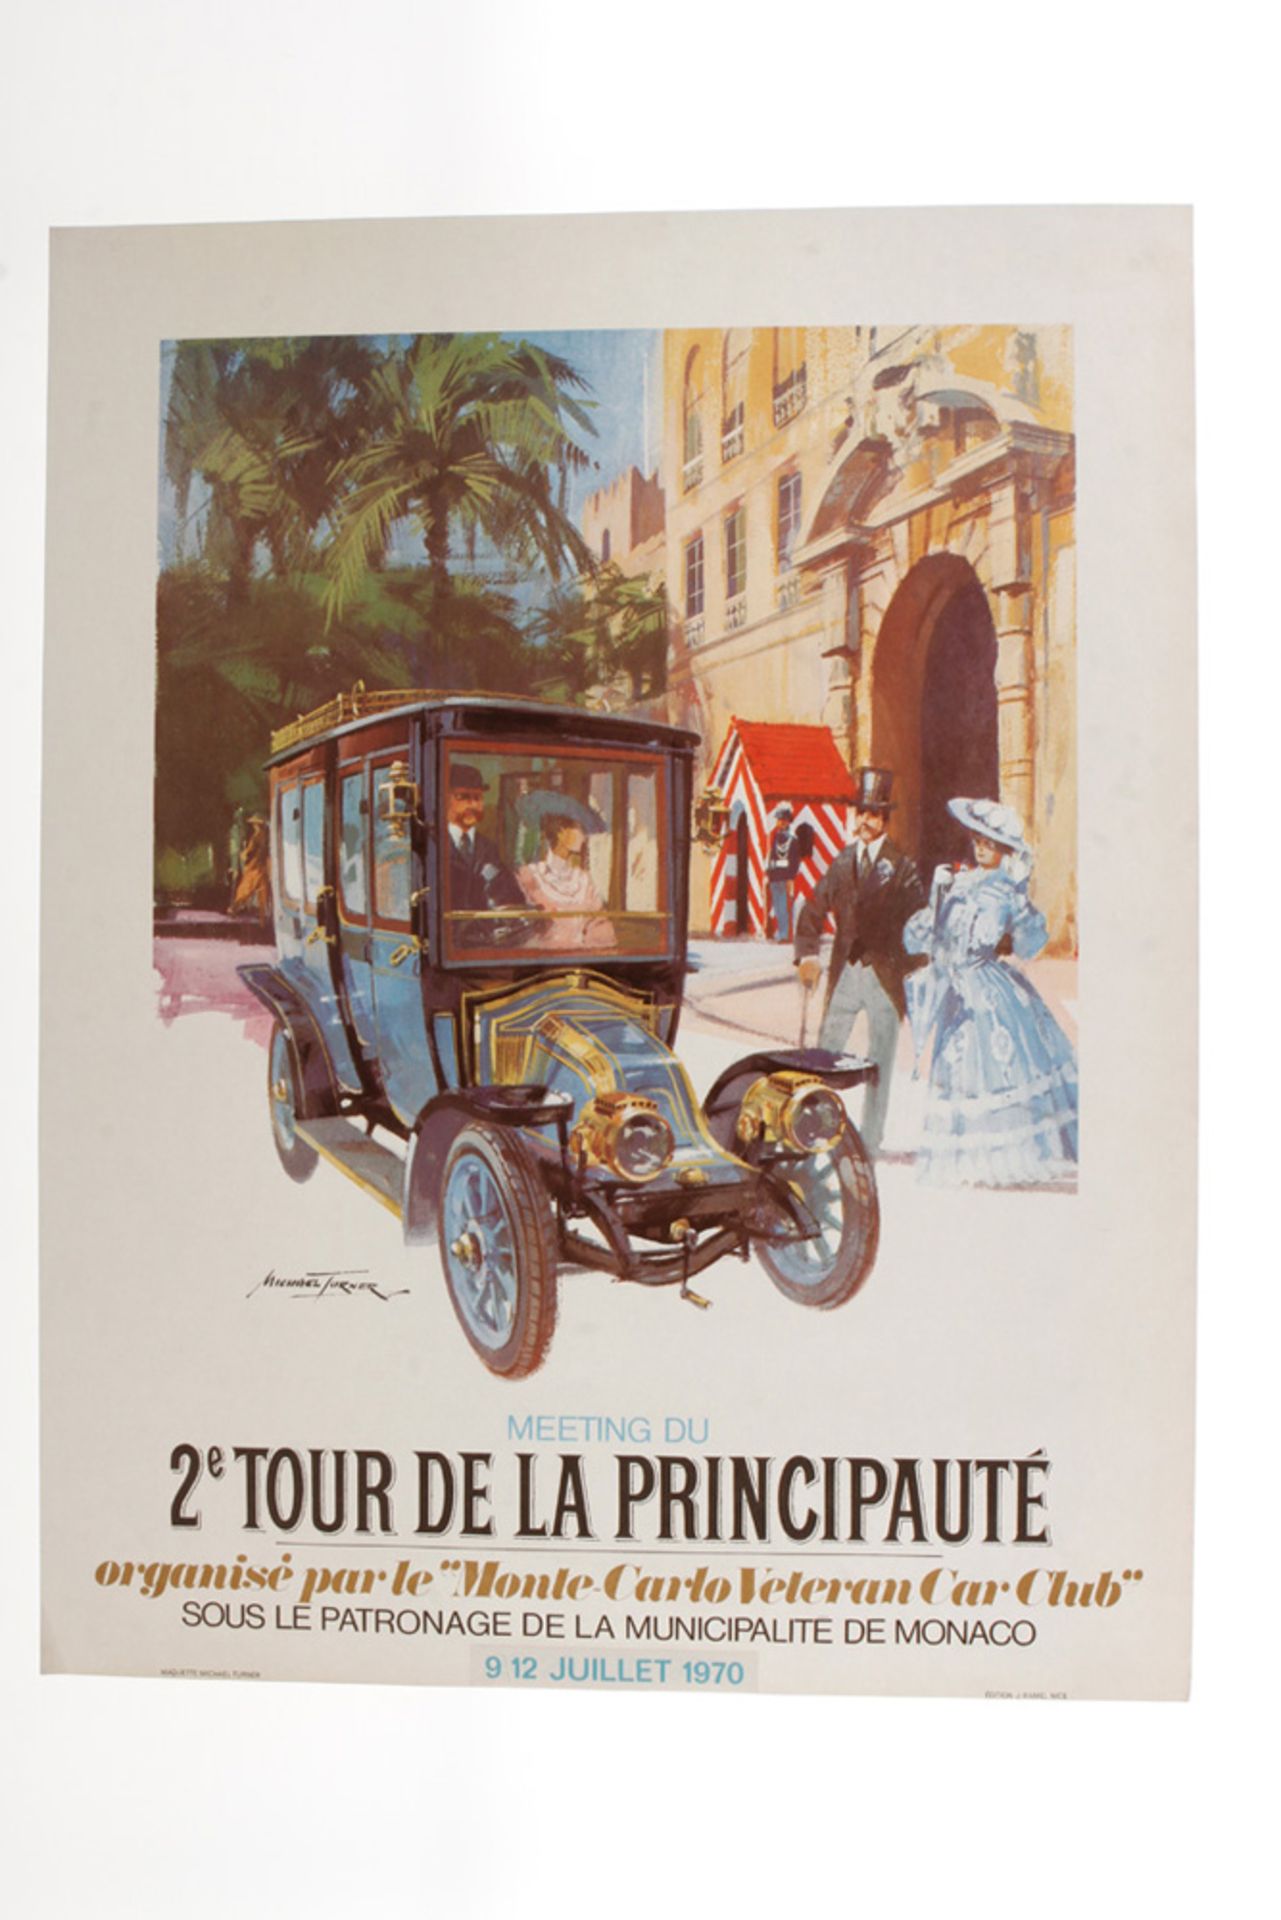 Orginal Rennplakat, 9/12 Juillet 1970,  2. Tour de la Principaute, organise par le "Monte-Carlo